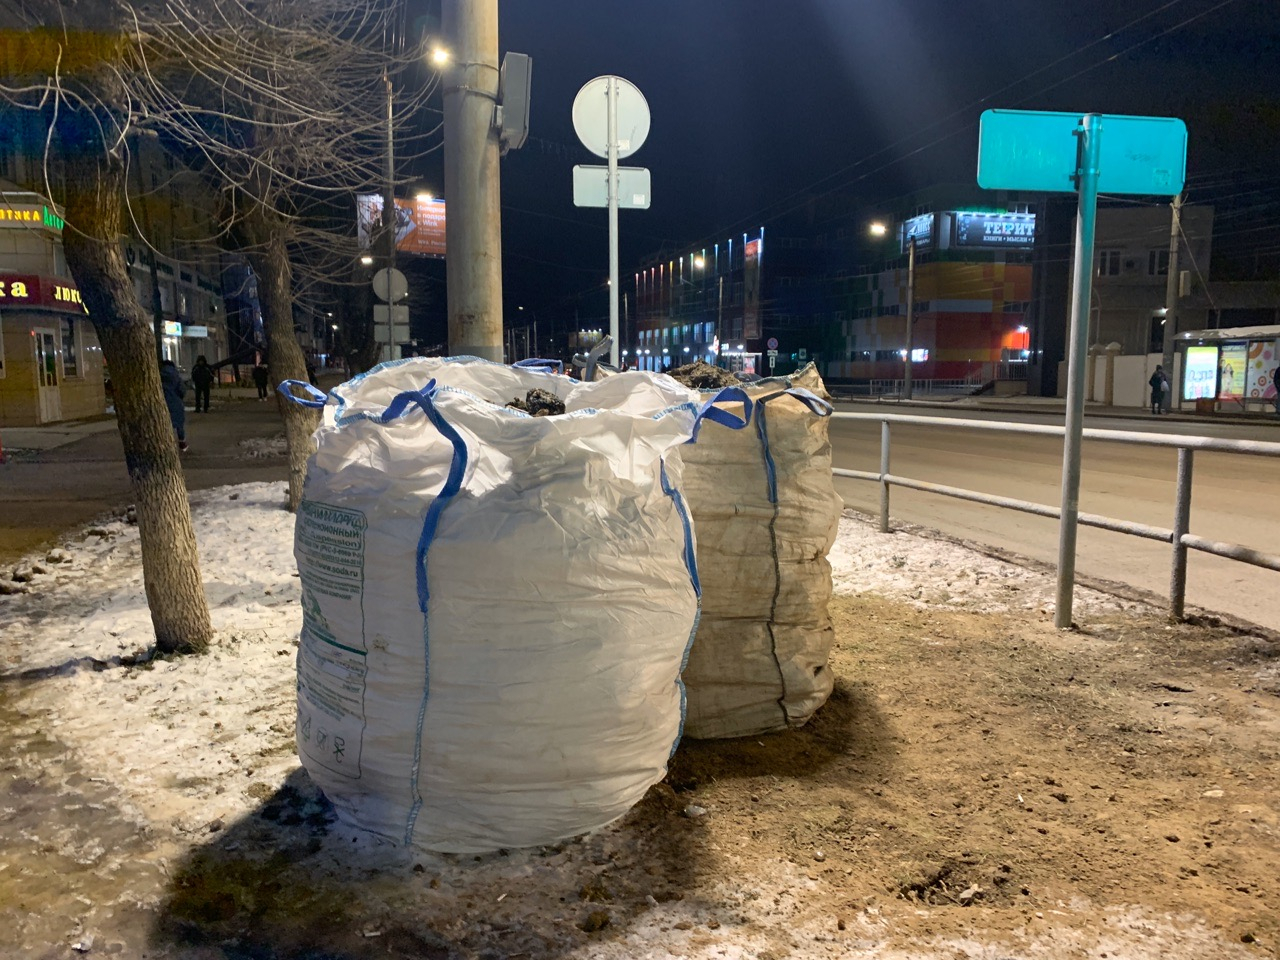 "Что это и кто оставил?": огромные мешки на кировских улицах удивили горожан